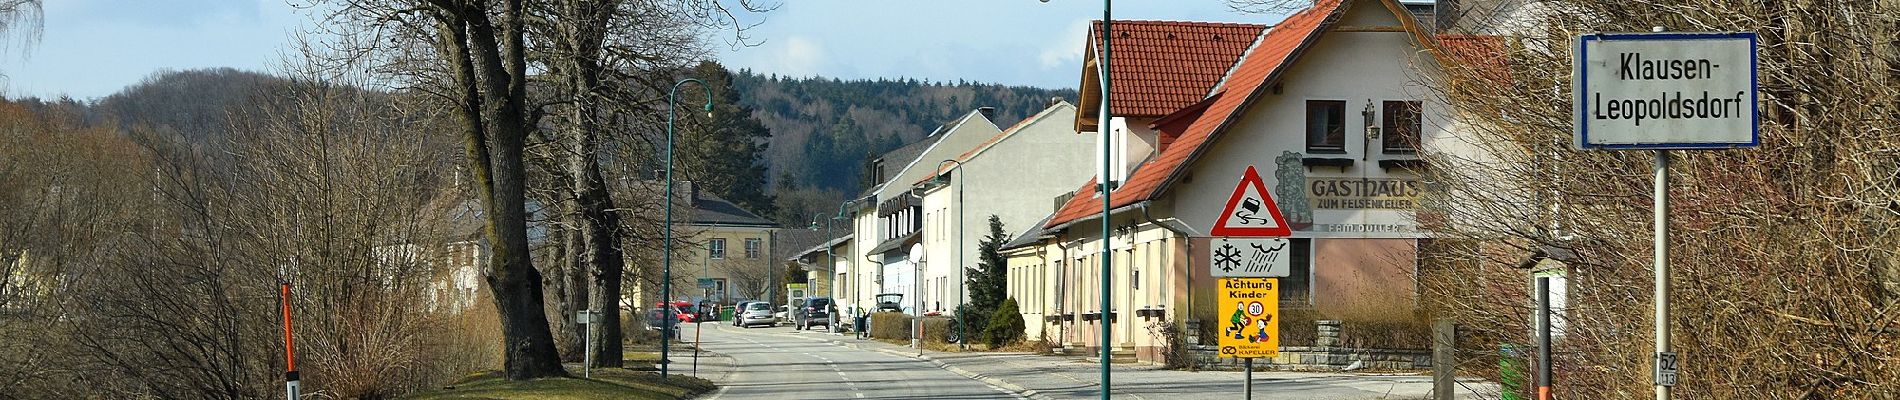 Tour Zu Fuß Gemeinde Klausen-Leopoldsdorf - Rundwanderweg um den Lammerauberg (bei Klausen-Leopoldsdorf) - Photo